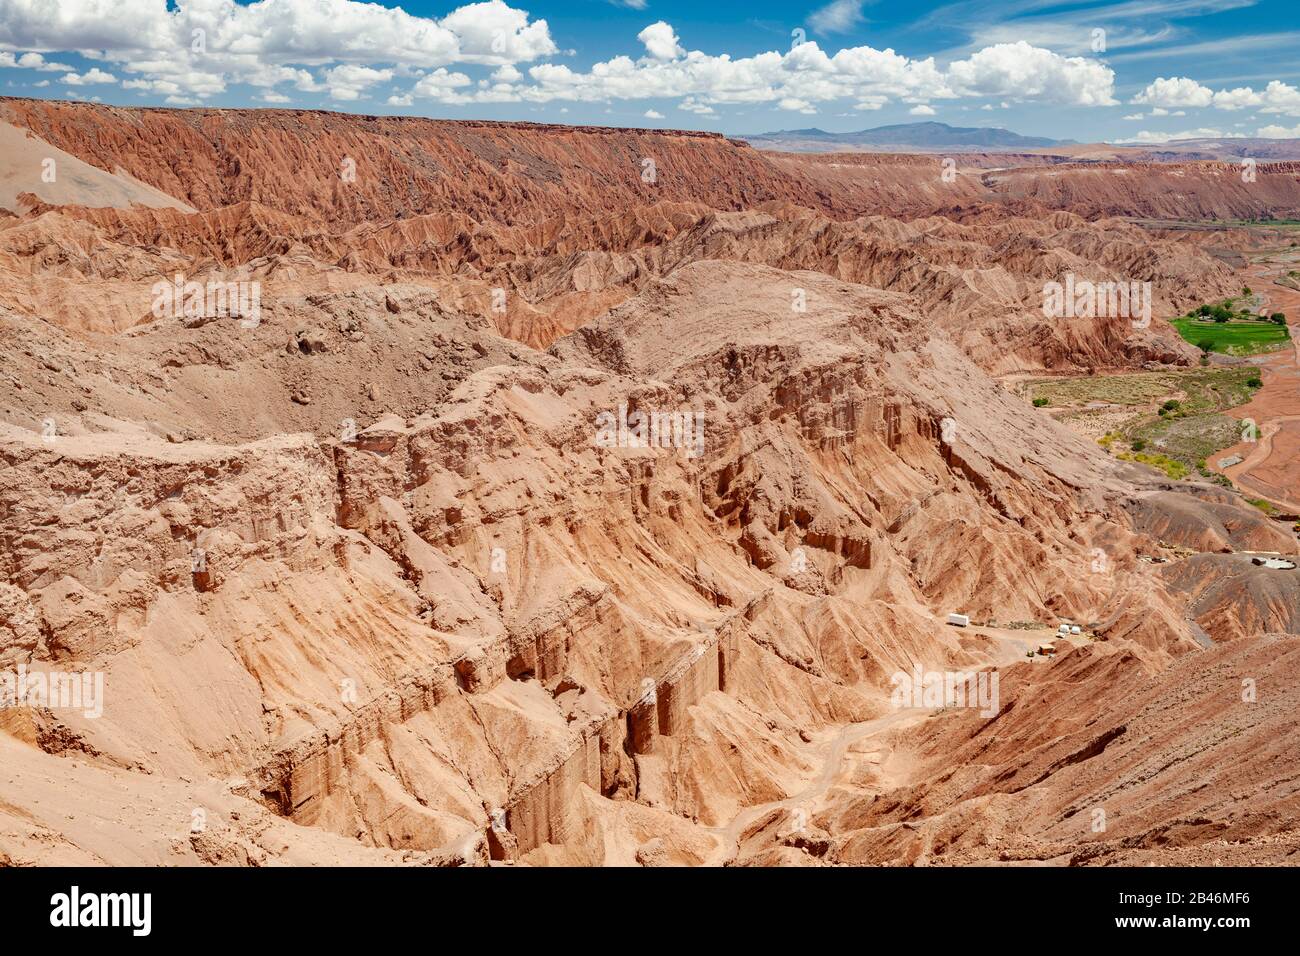 Atacama desert landscape seen from the Pukará de Quitor archaeological site near San Pedro de Atacama in northern Chile. Stock Photo